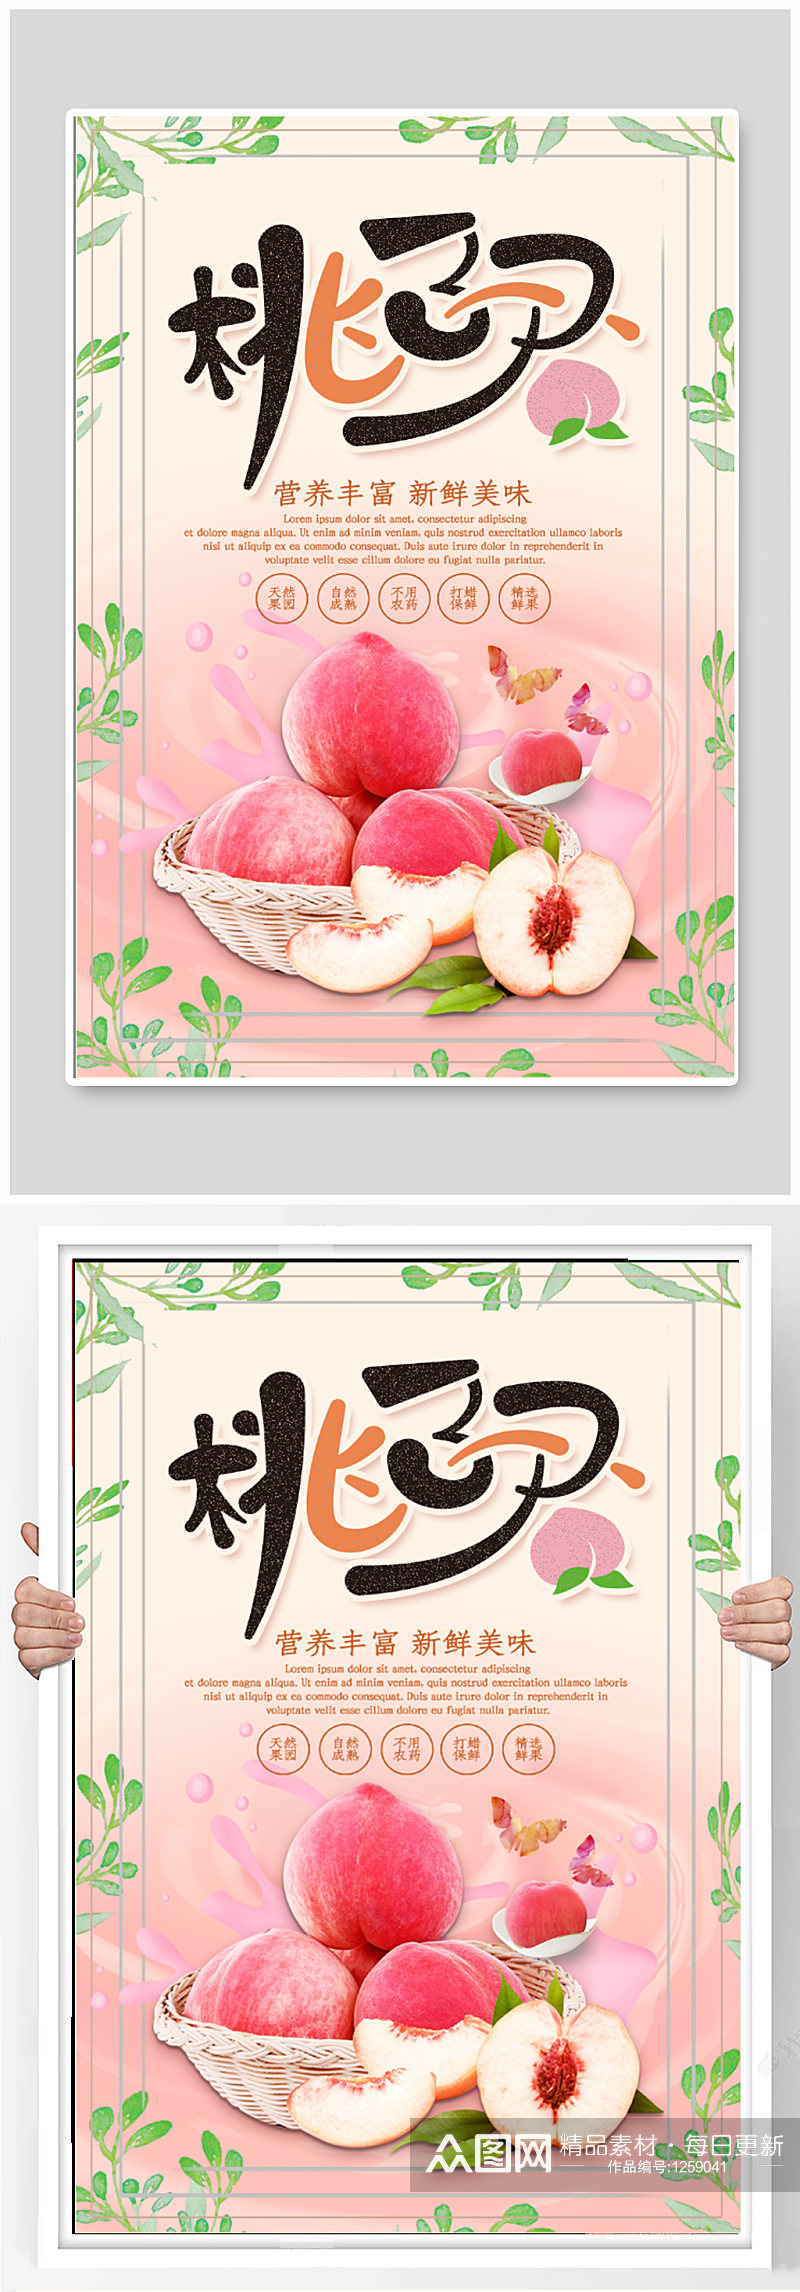 桃子水果店促销海报素材